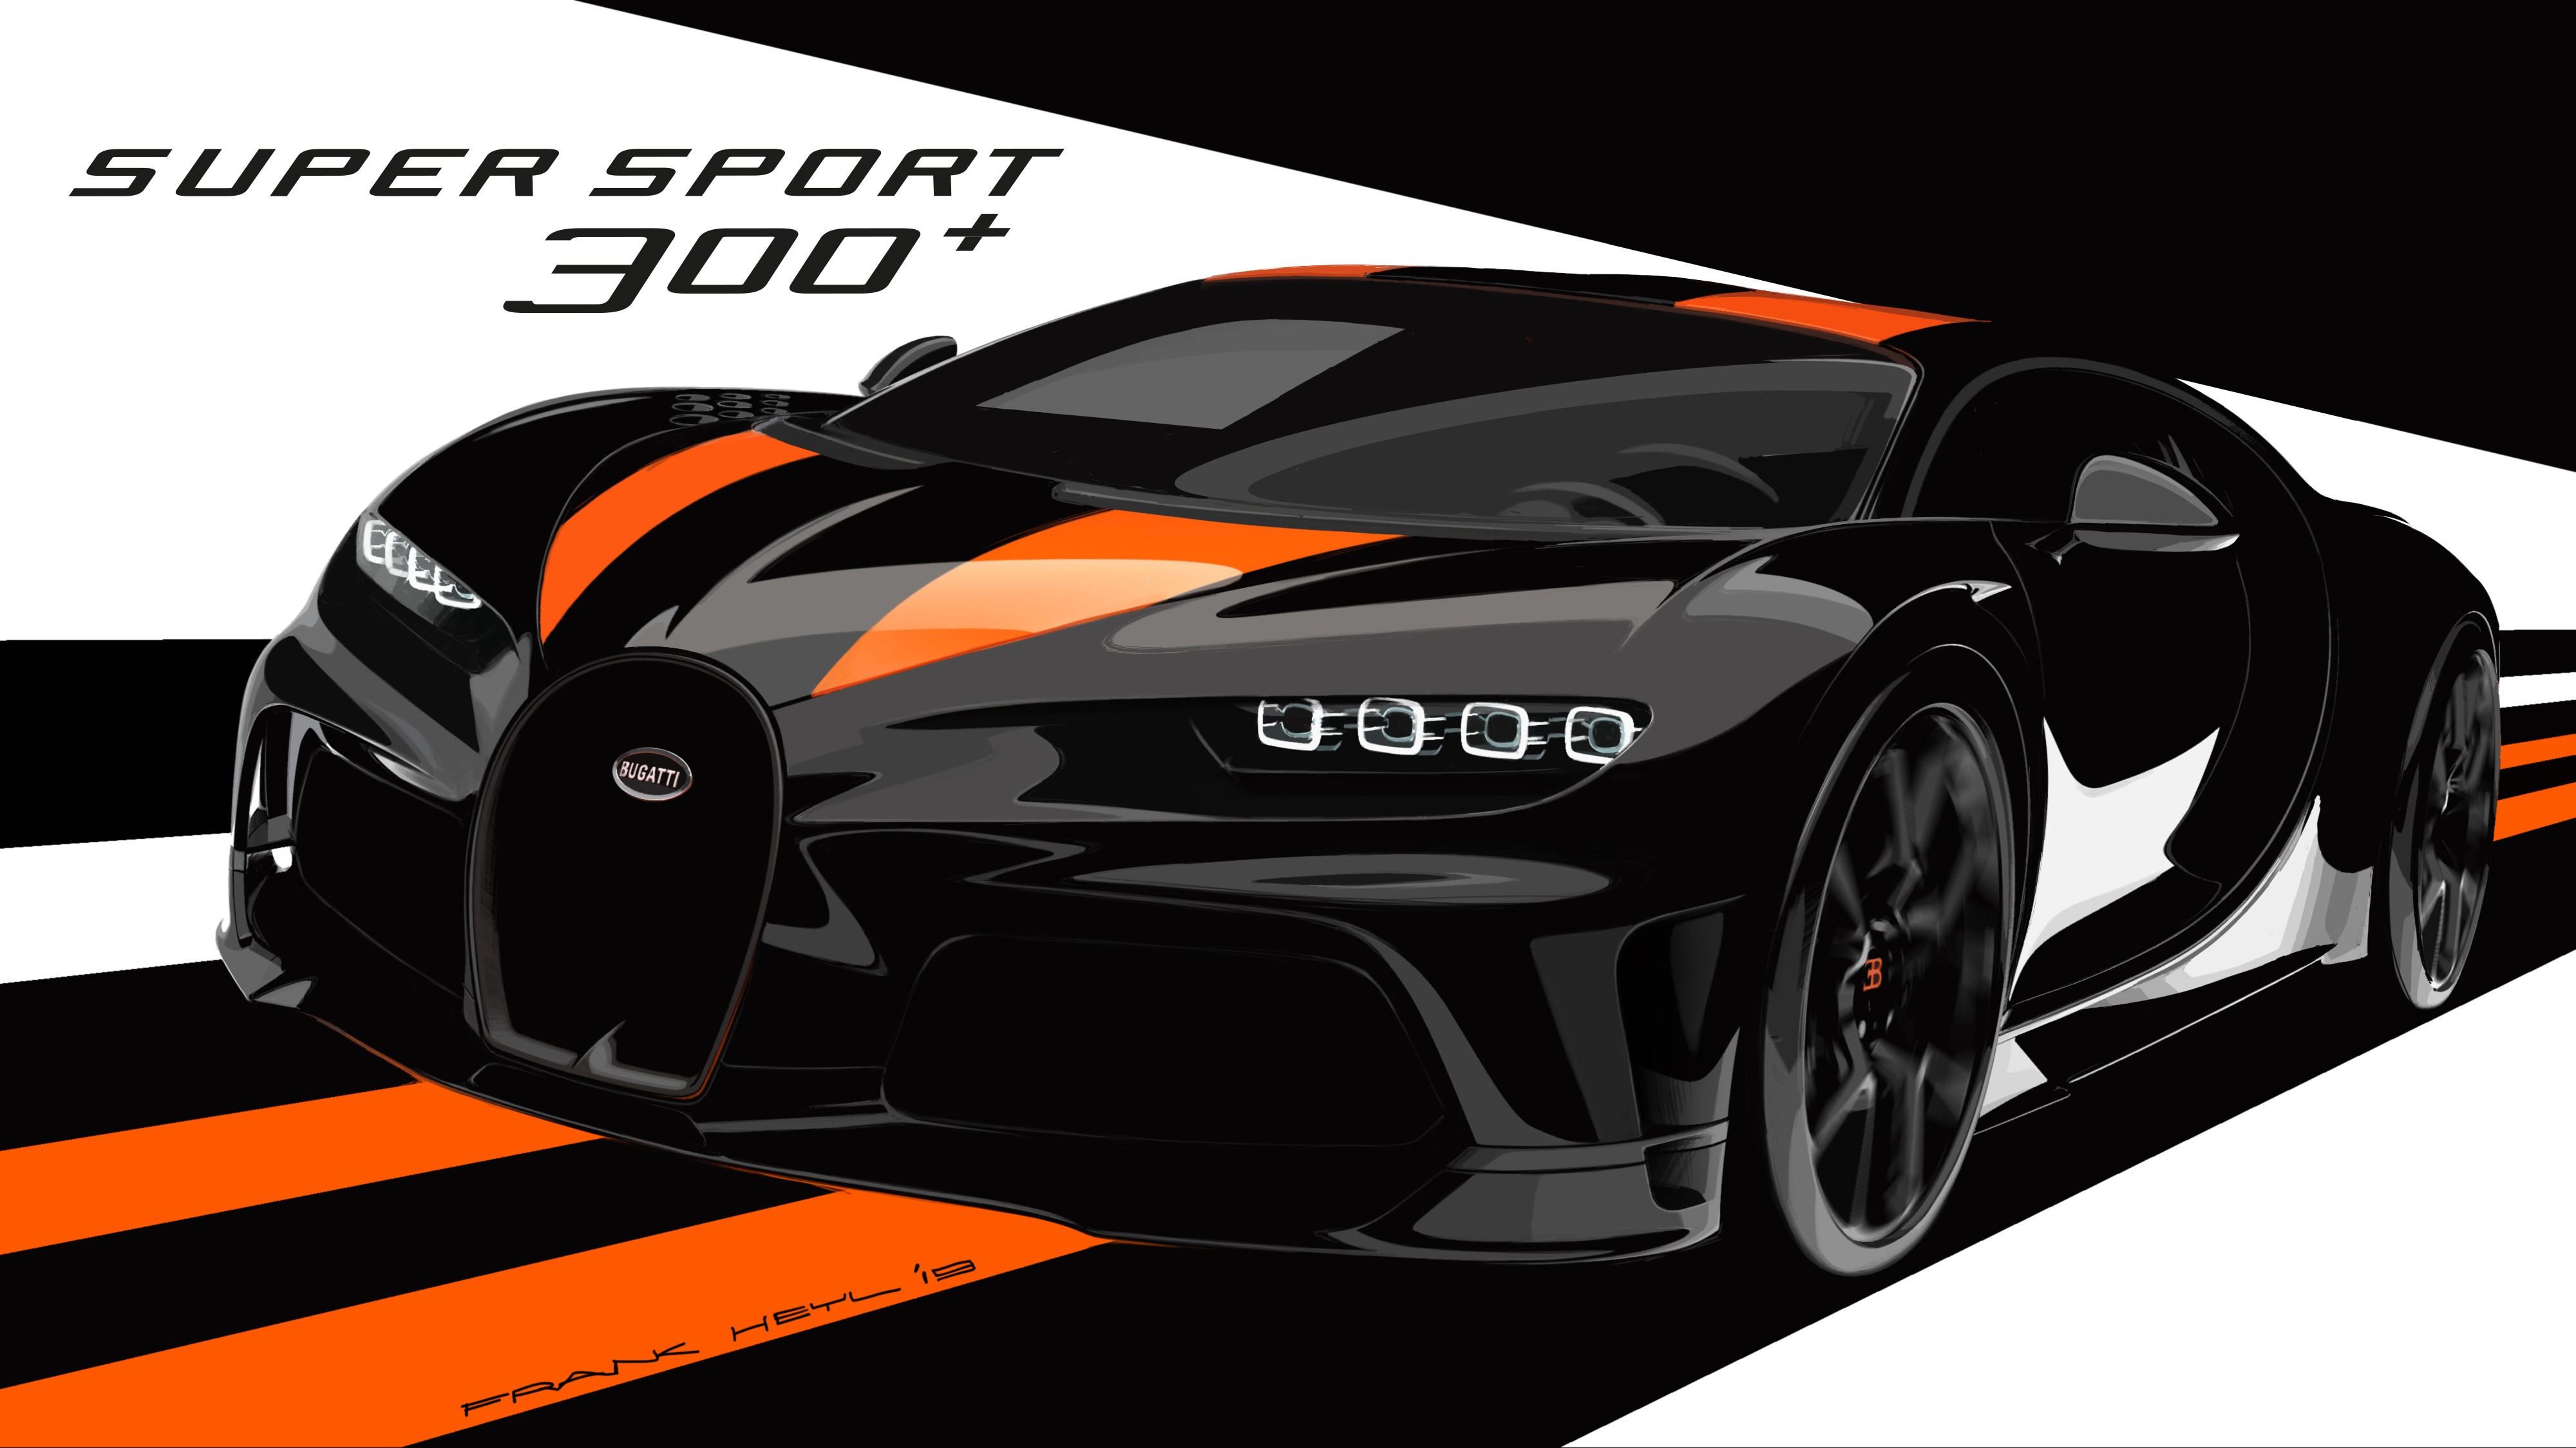 Bugatti launches special edition Chiron Super Sport 300+ - Double Apex